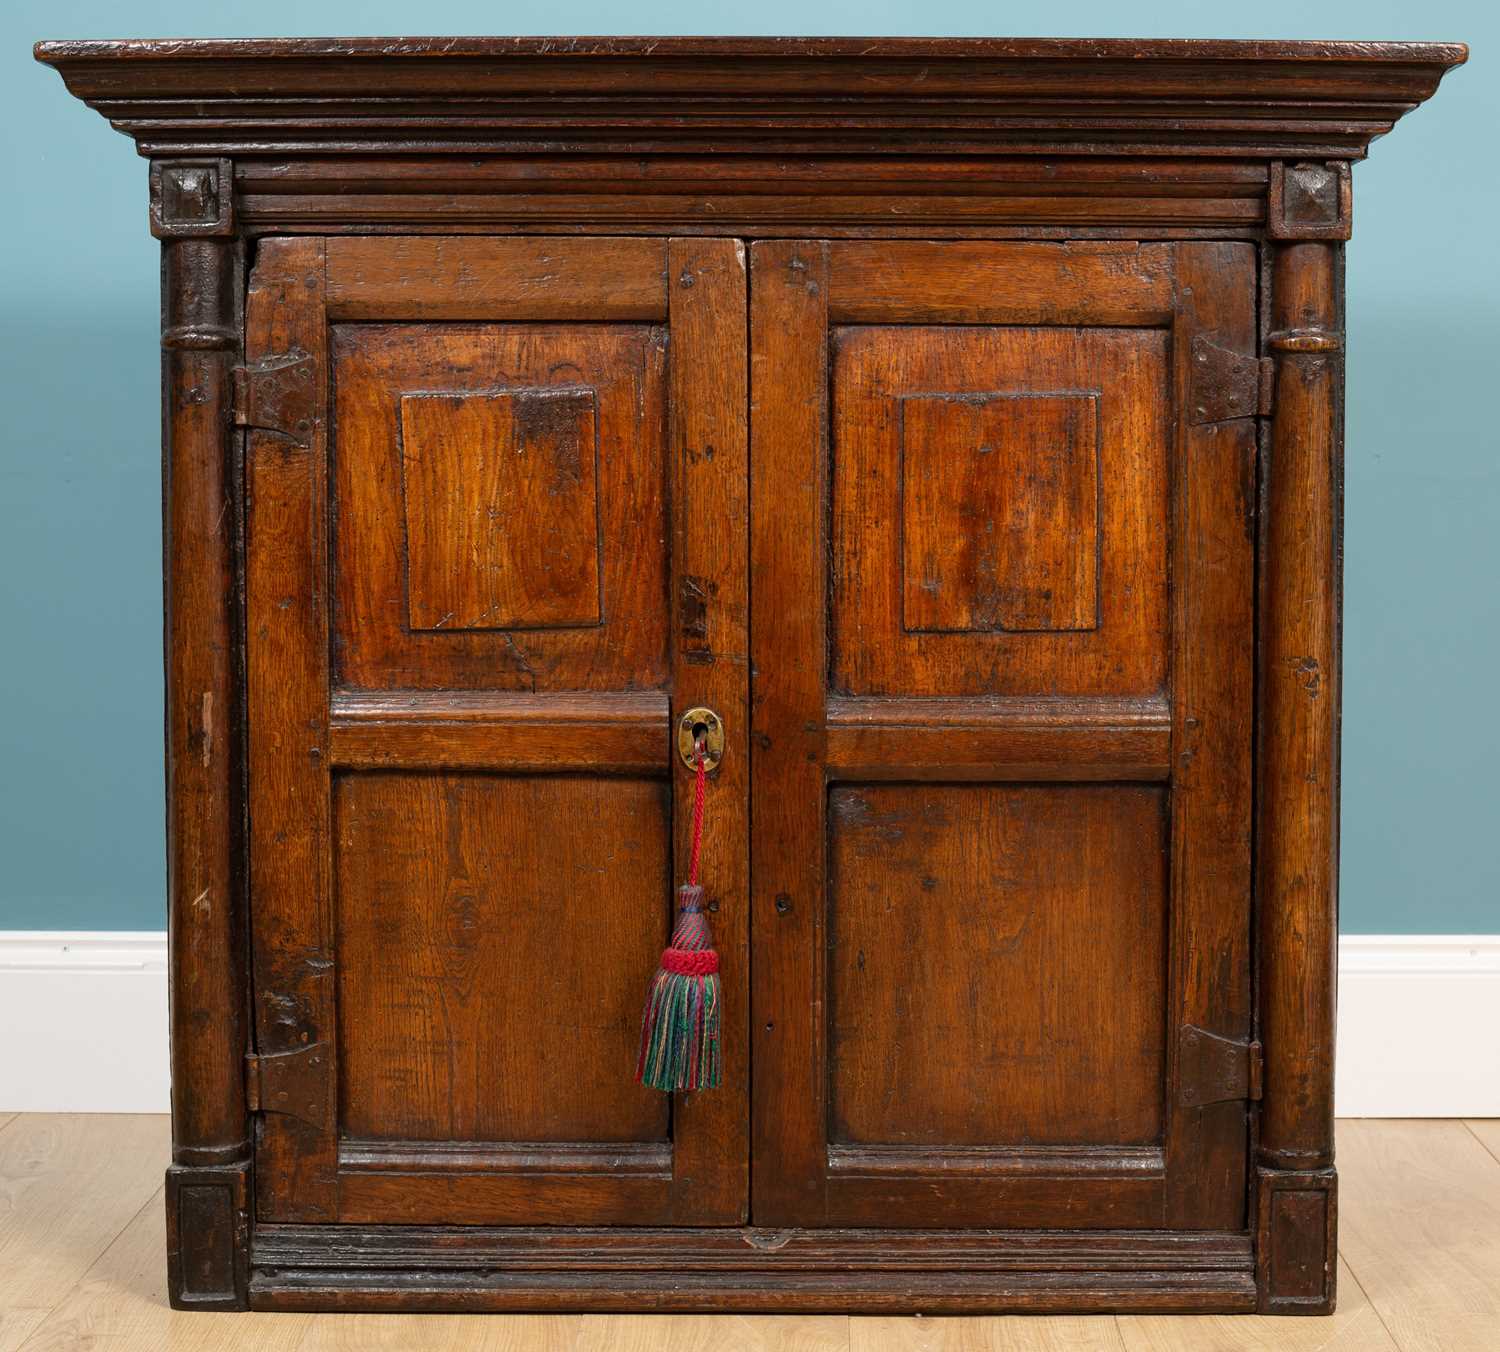 Lot 172 - An 18th century oak cupboard